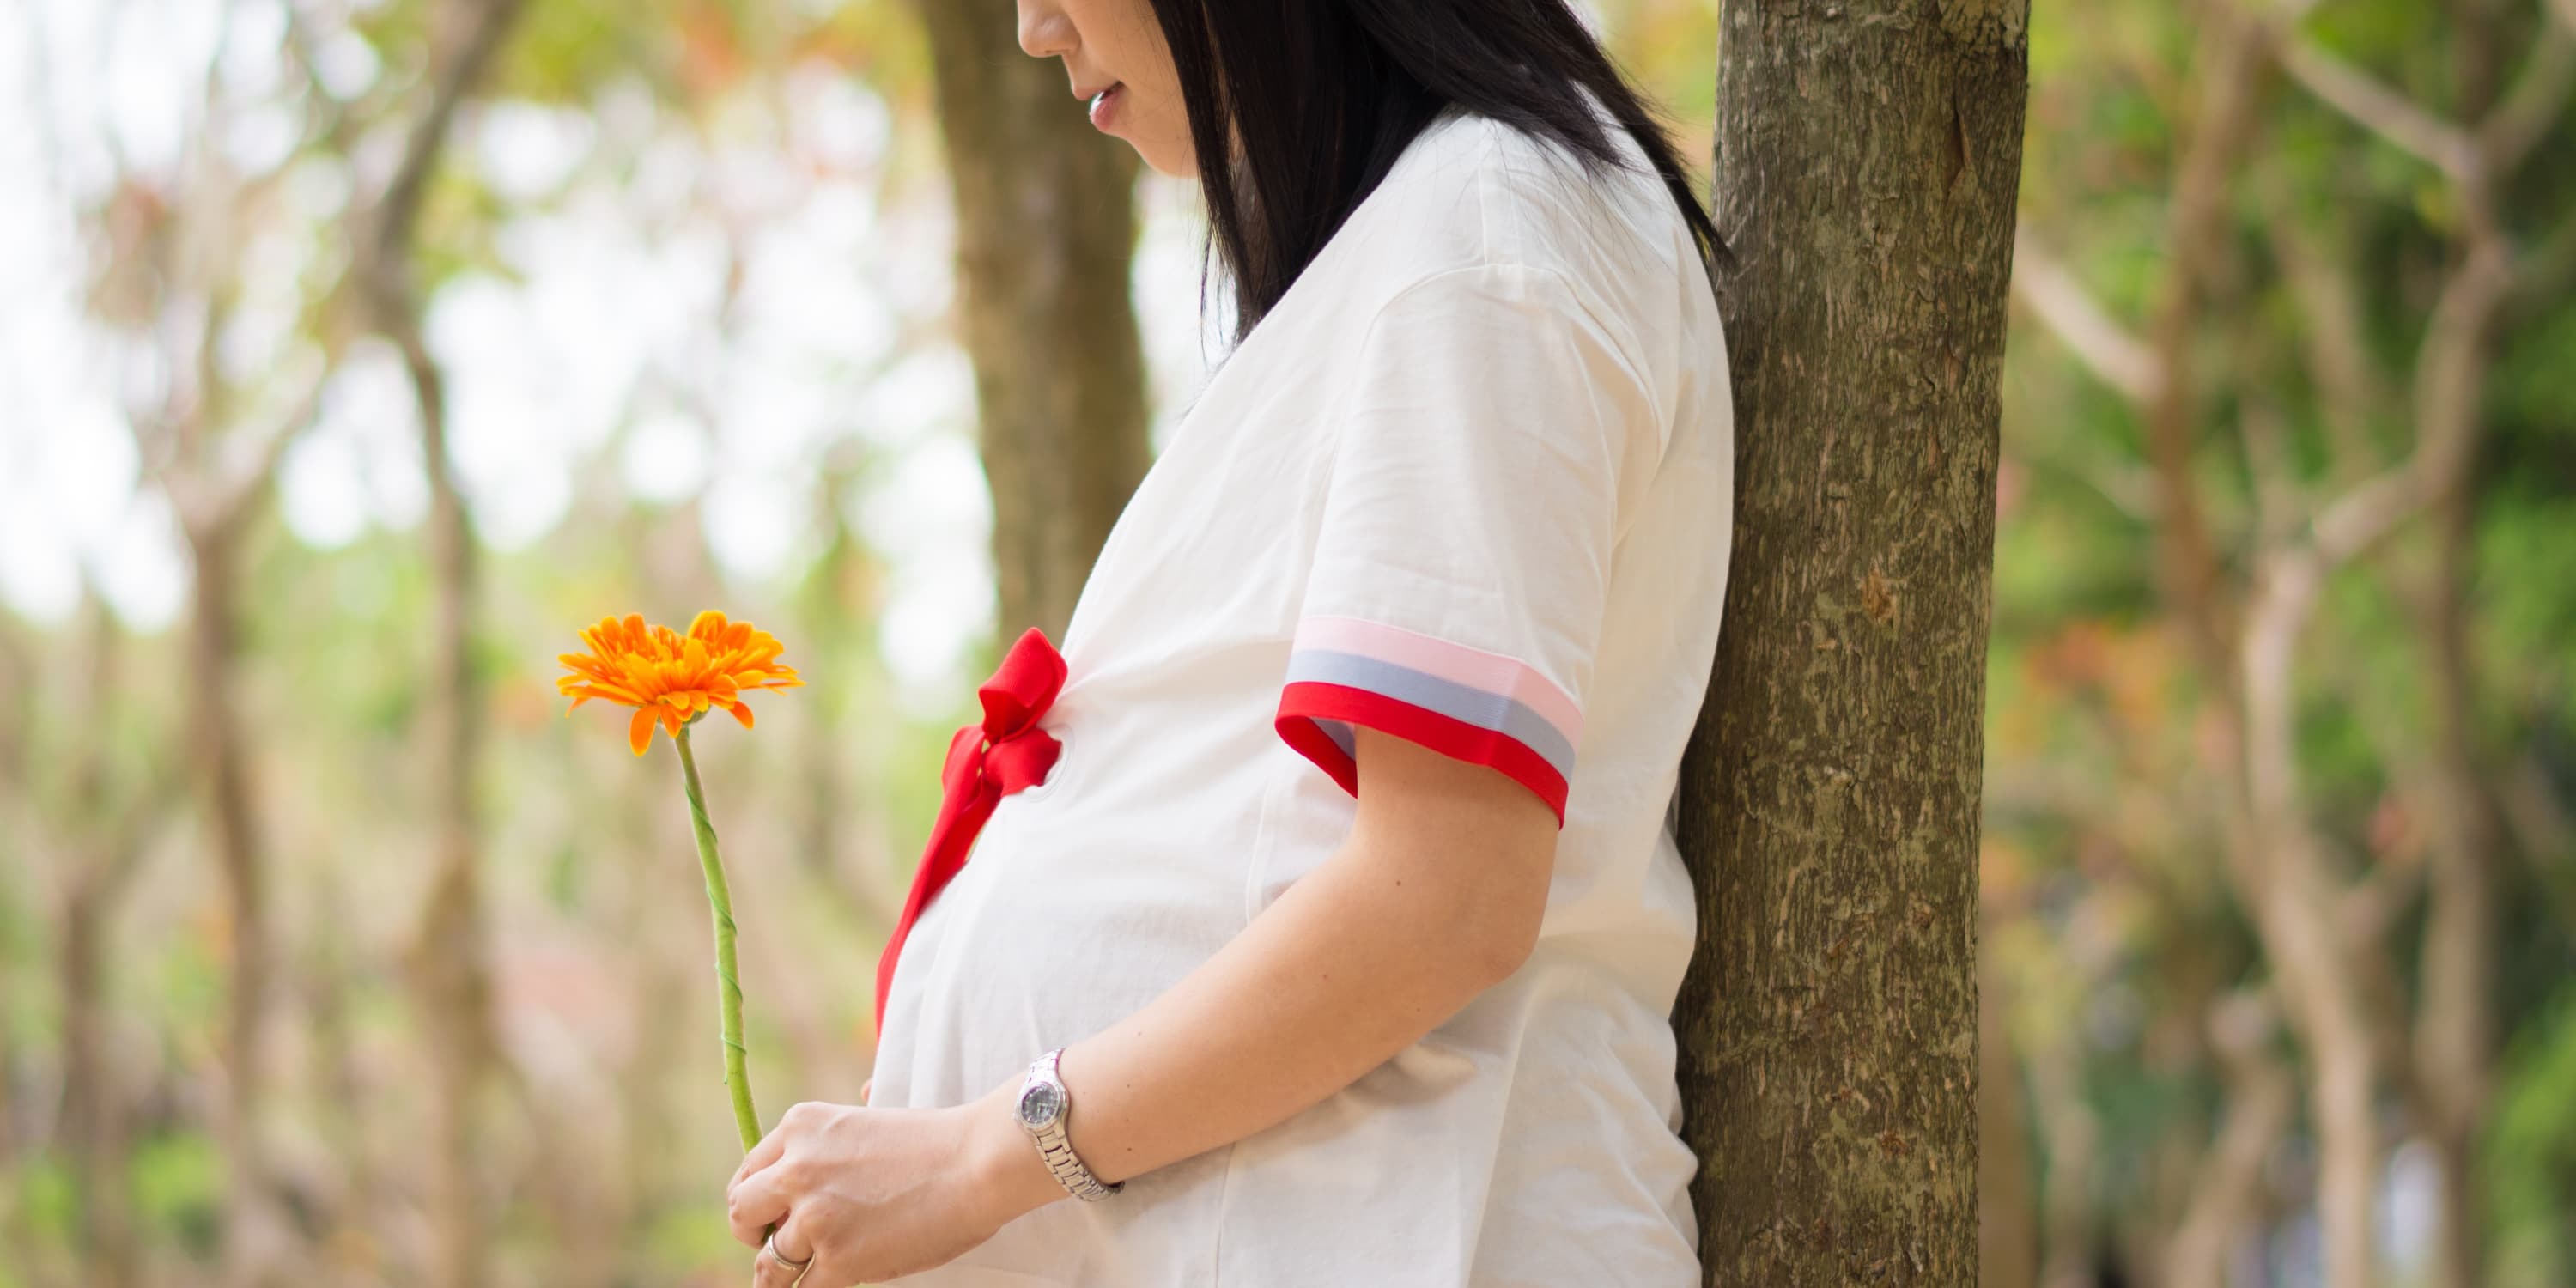 Een zijaanzicht van een zwangere vrouw die onder een boom staat en een bloem in haar handen houdt.